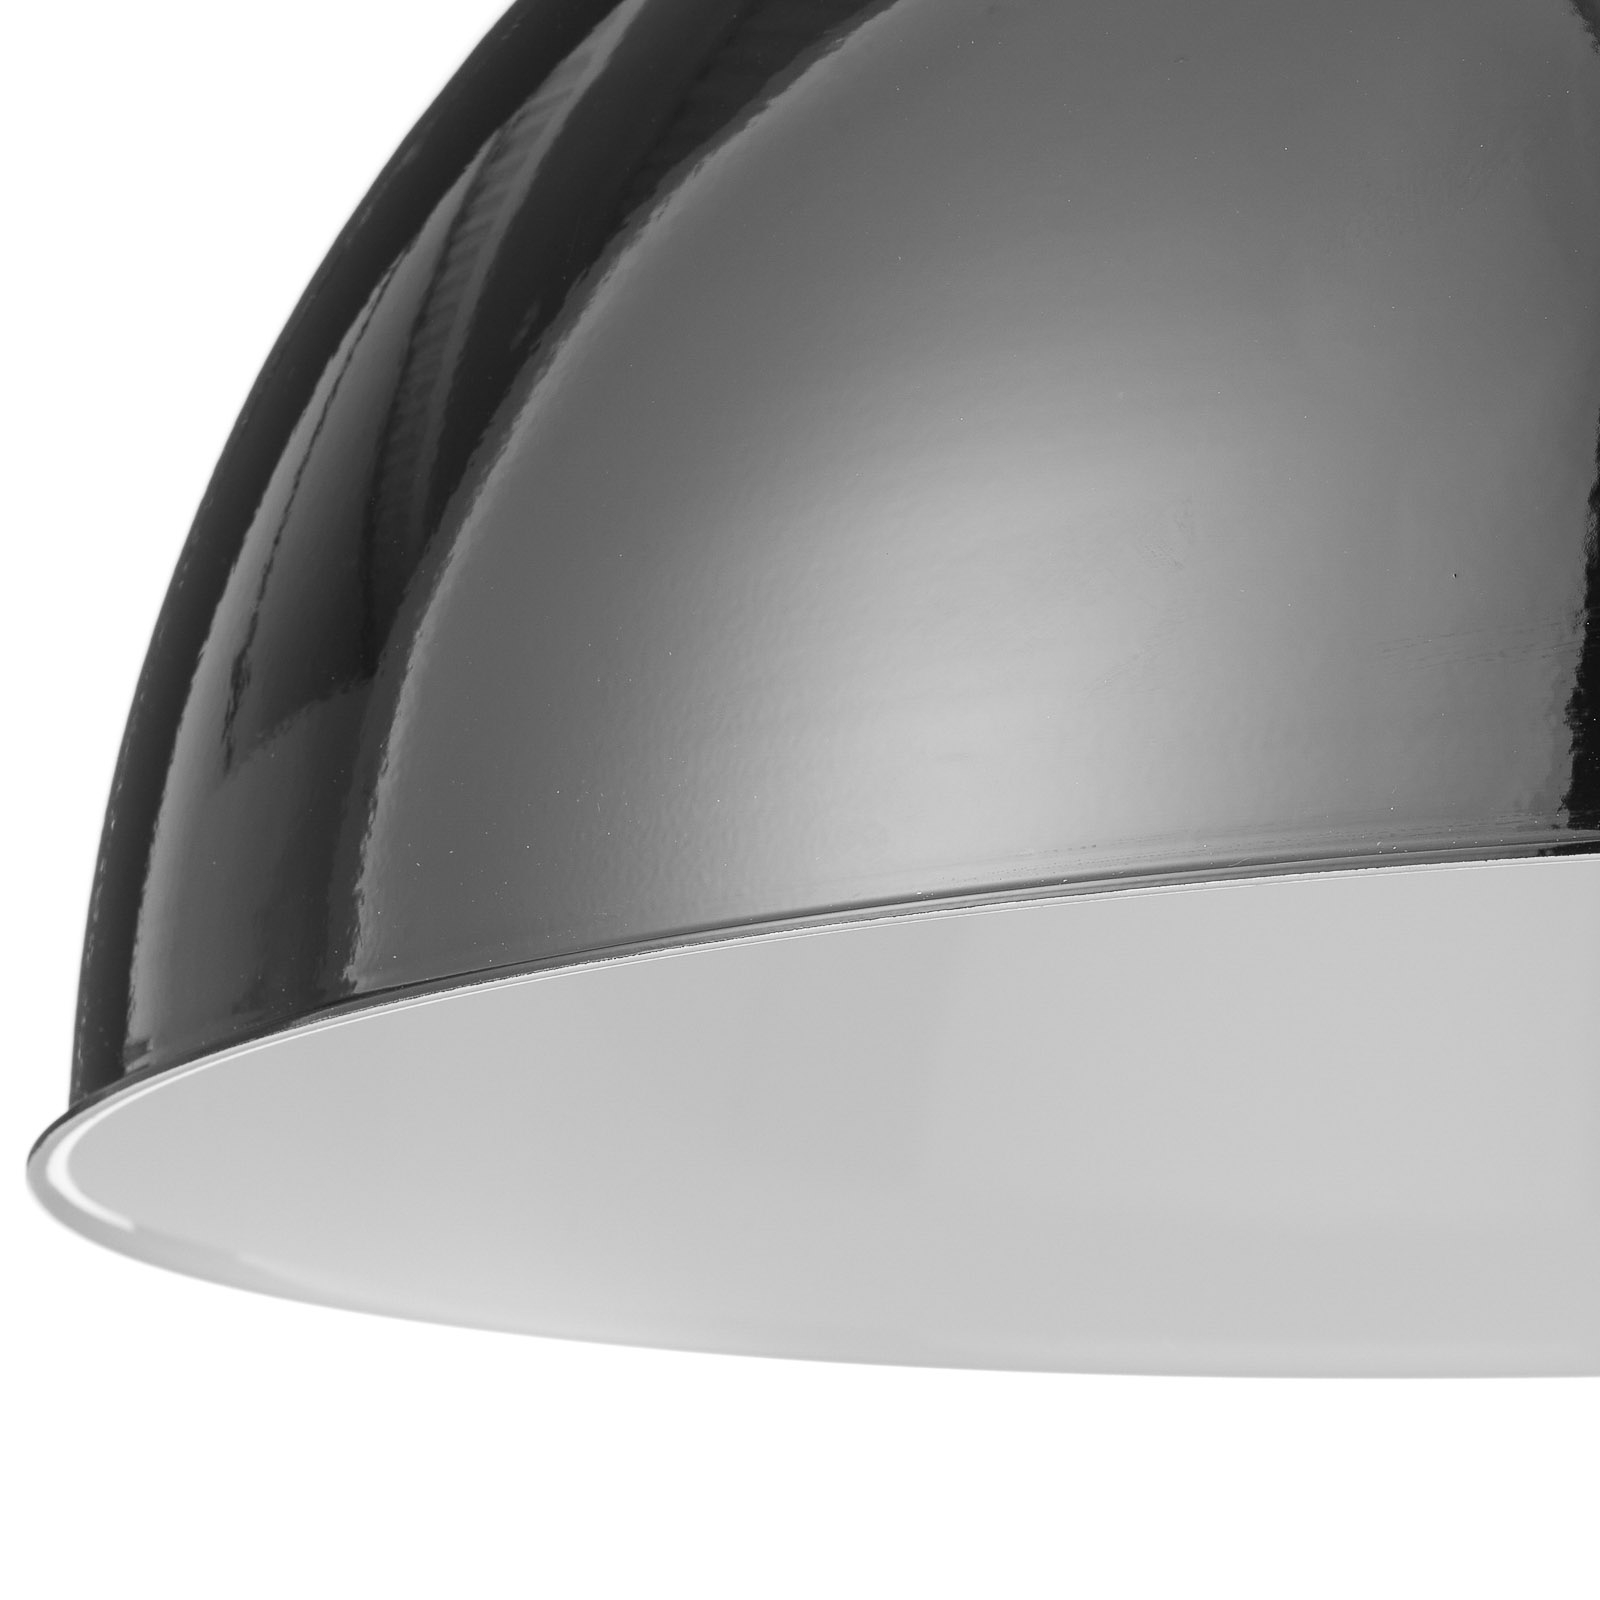 Jieldé Dante D450 hanglamp, zwart, Ø 45 cm